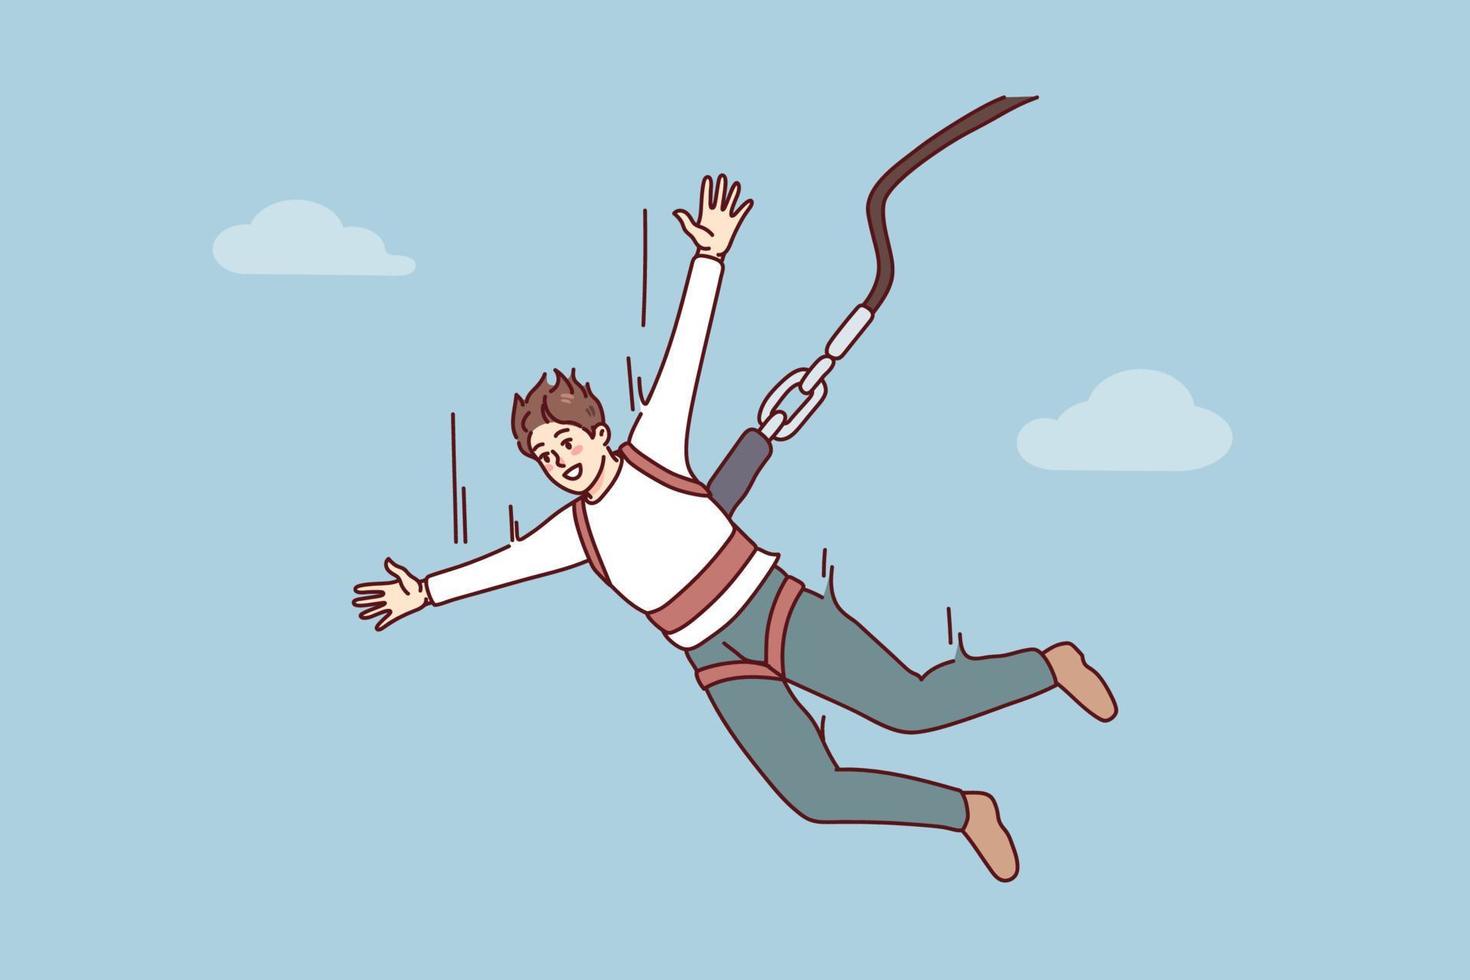 excité Jeune homme sauter avec parachute. souriant gars prendre plaisir extrême sport avec corde sauter. vecteur illustration.